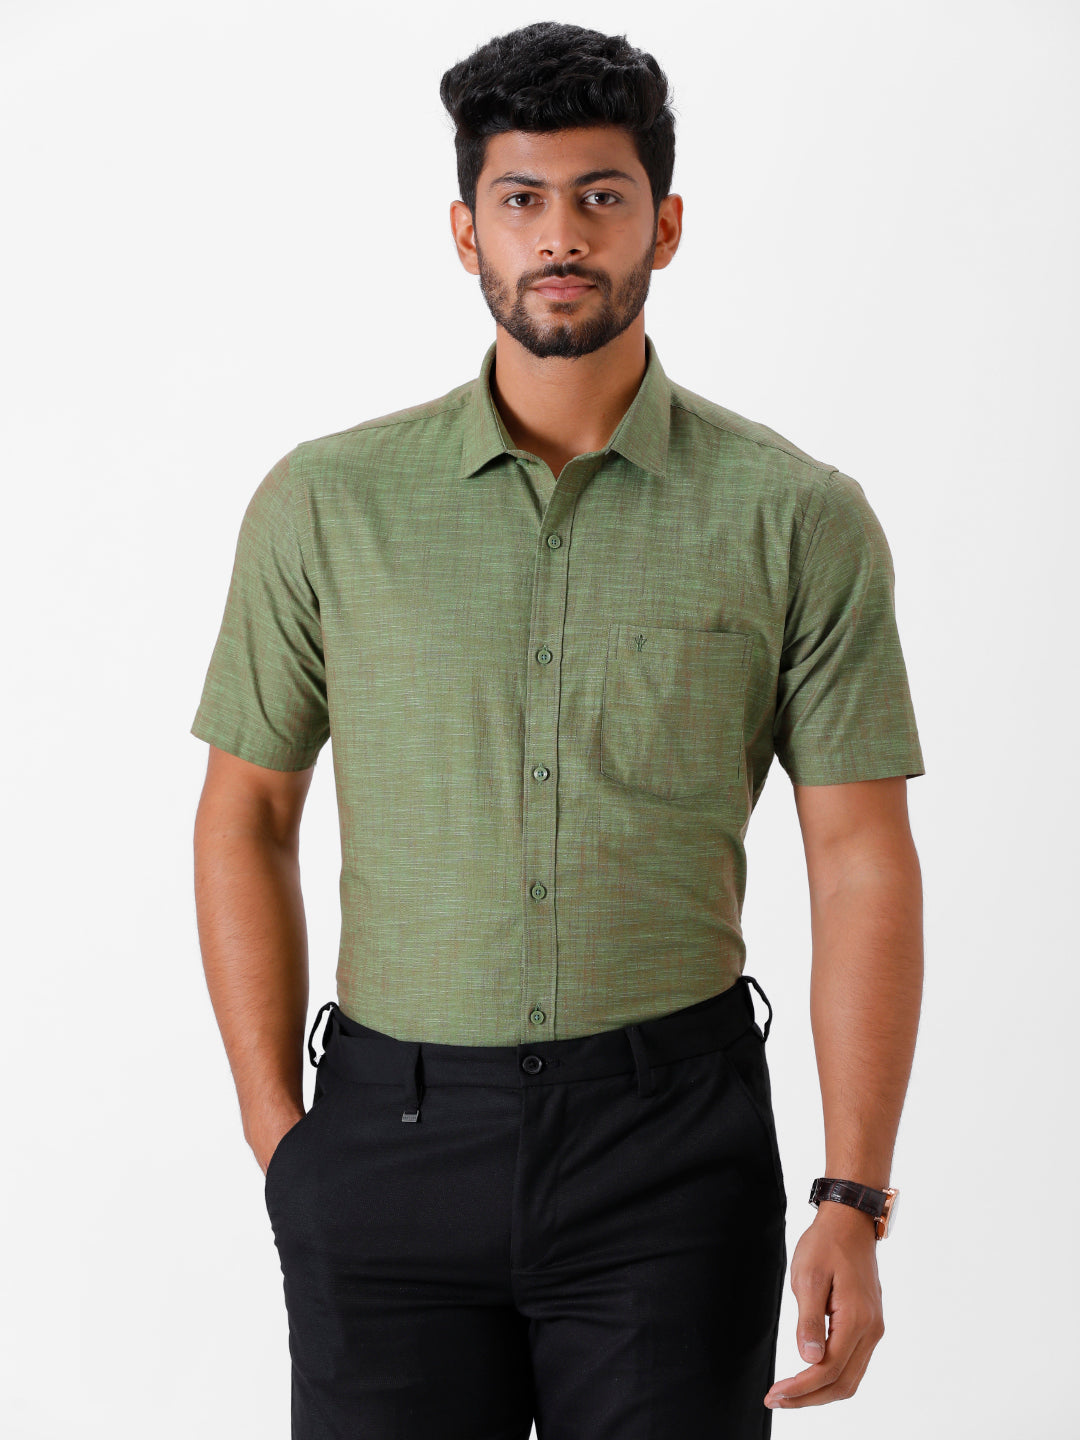 Mens Formal Shirt Half Sleeves Green CL2 GT19